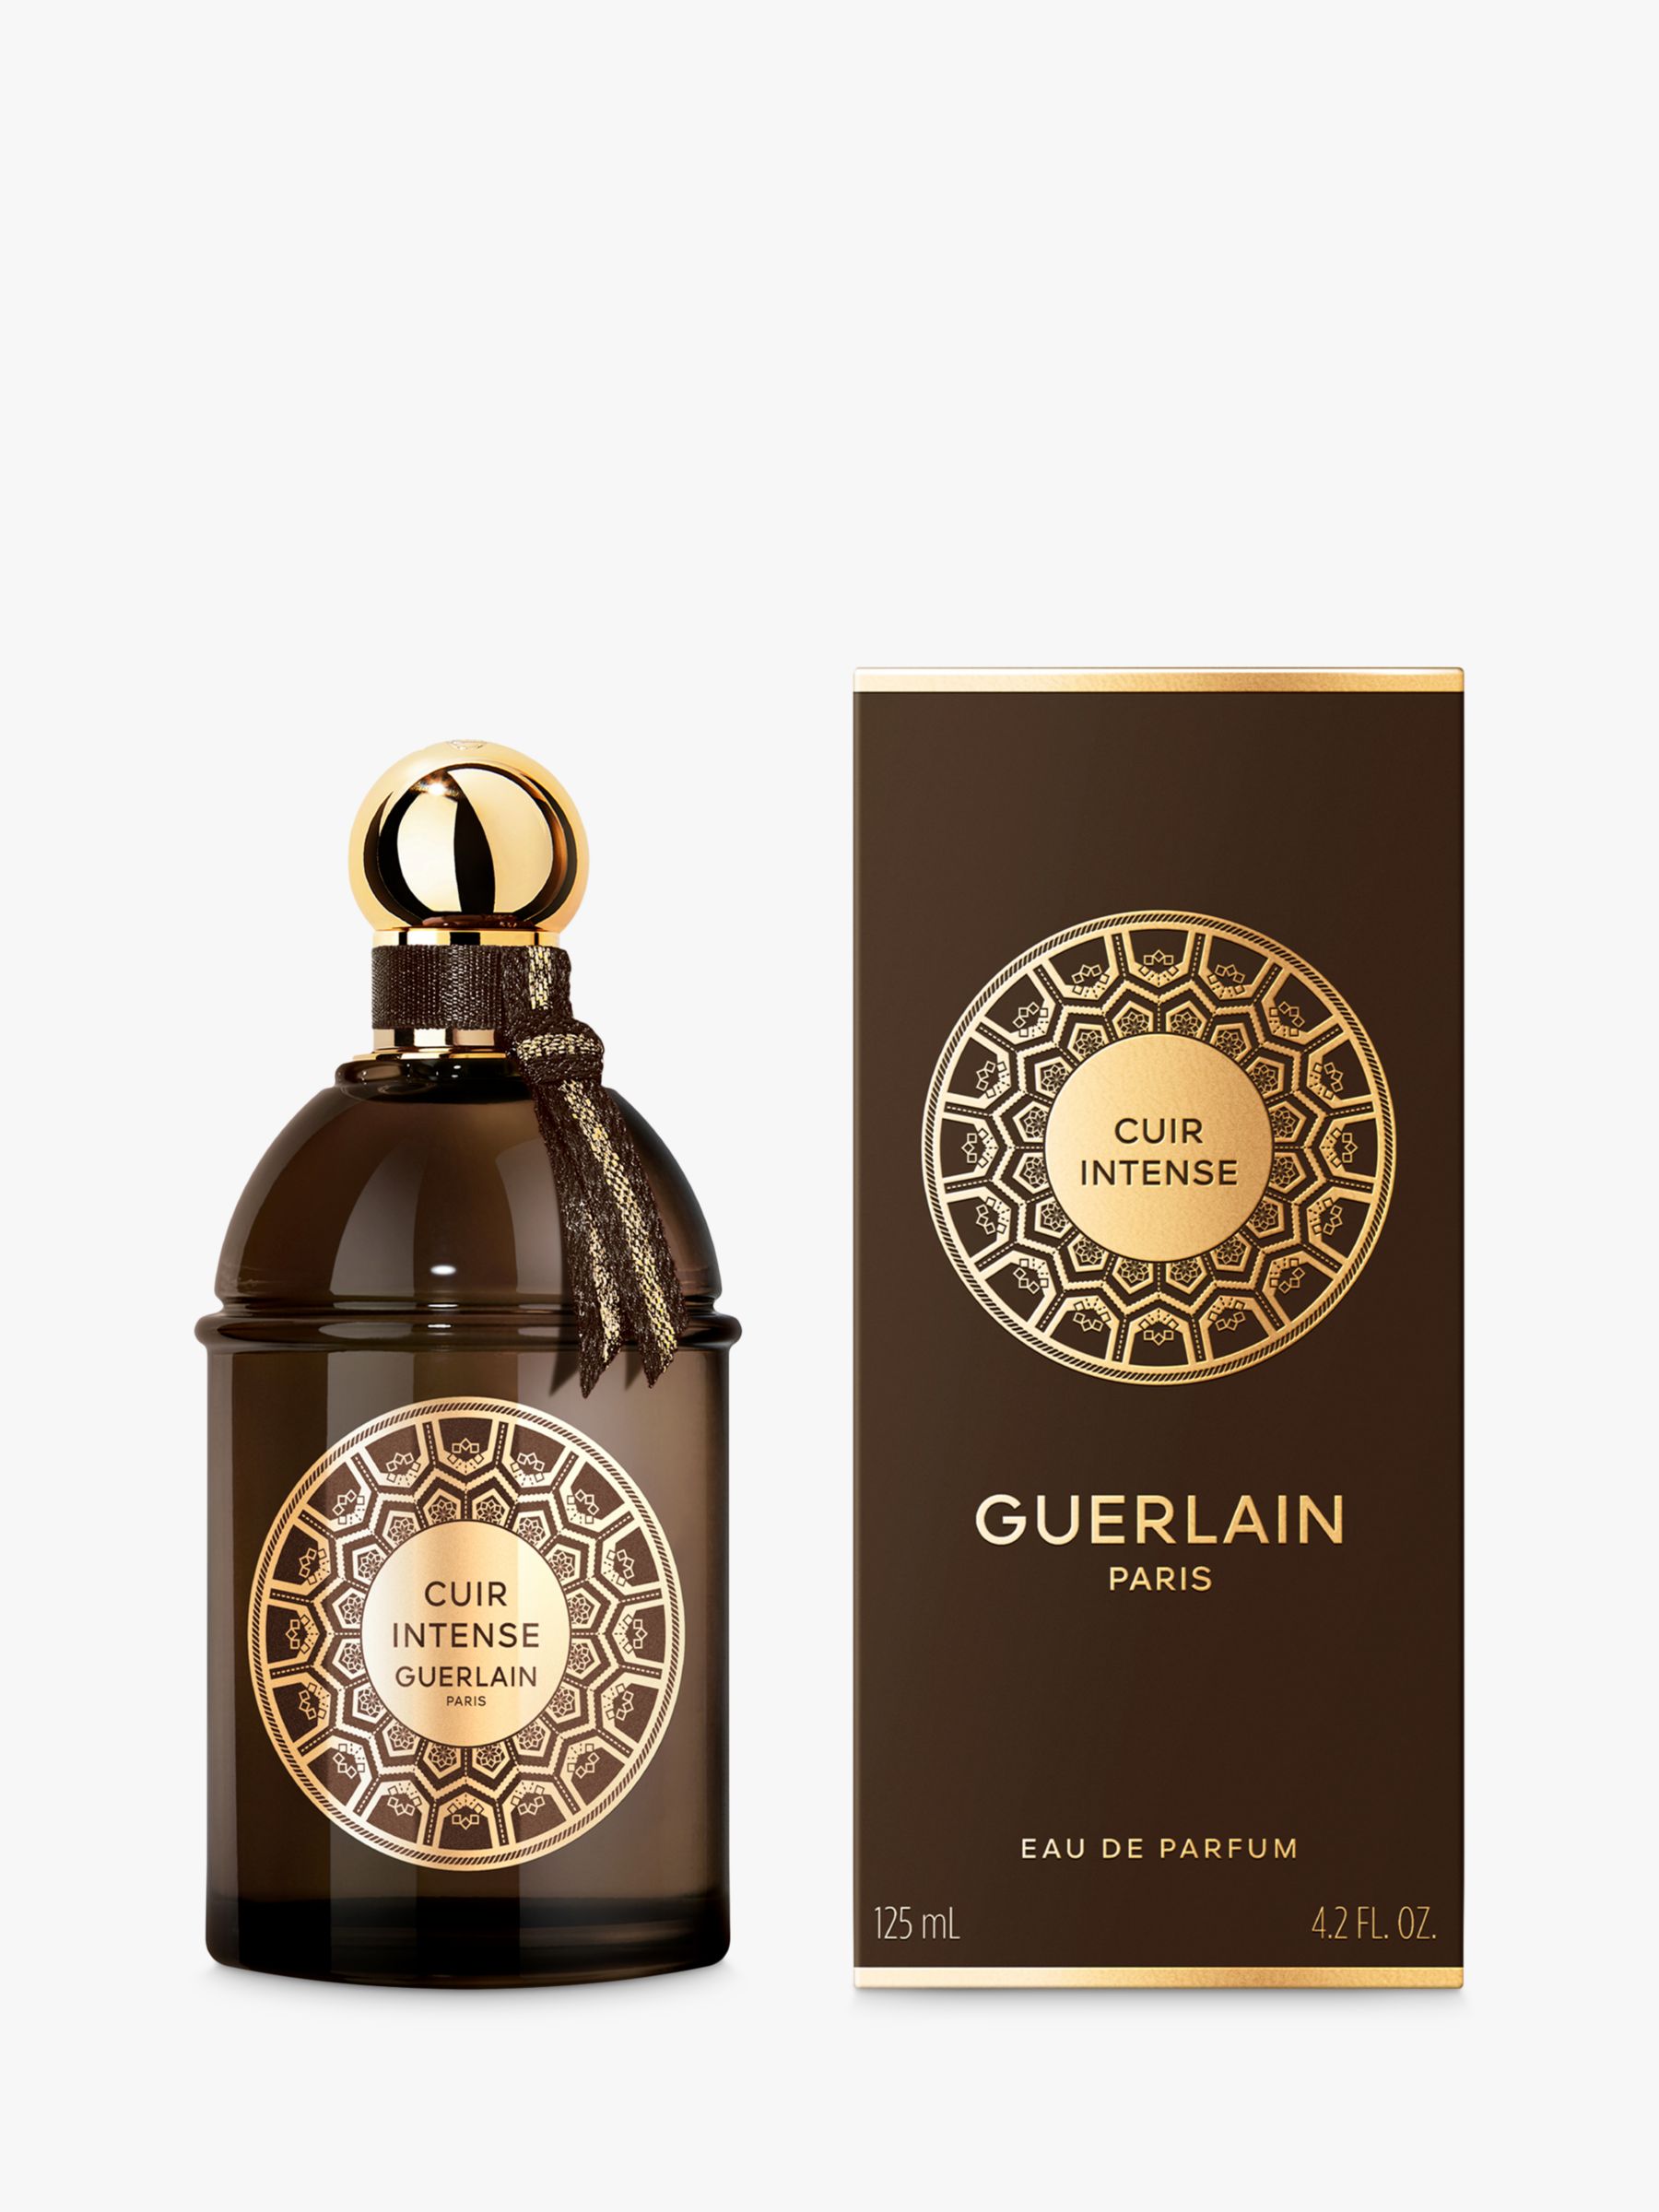 Guerlain Les Absolus d'Orient Cuir Intense Eau de Parfum, 125ml 3